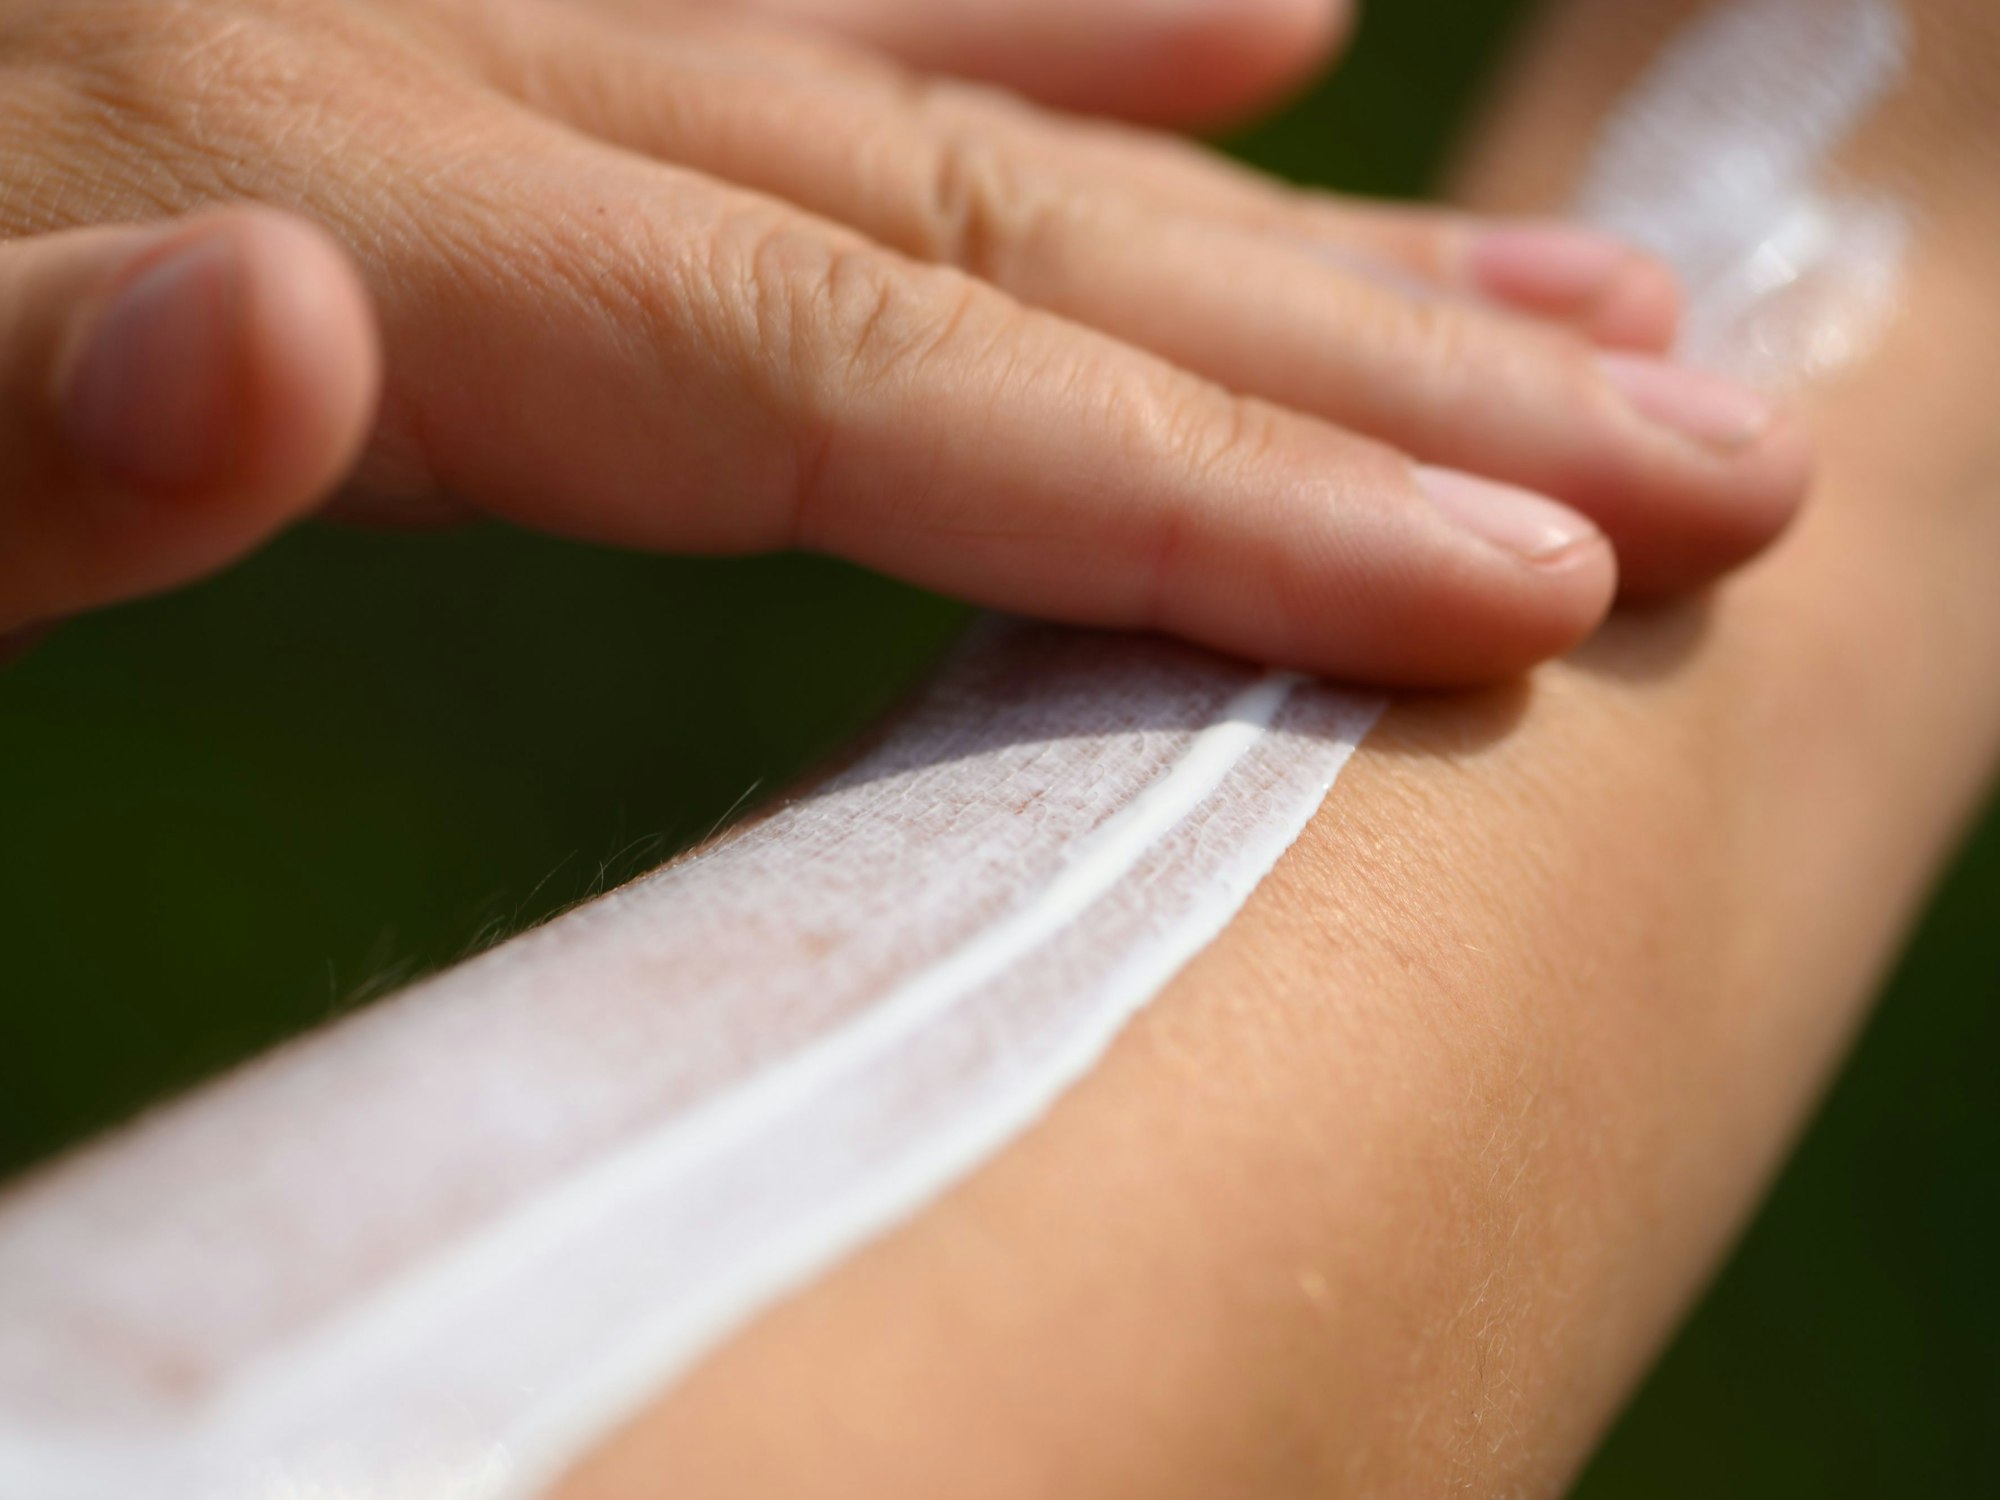 Eine Frau schmiert sich ihren Unterarm mit Sonnencreme ein.